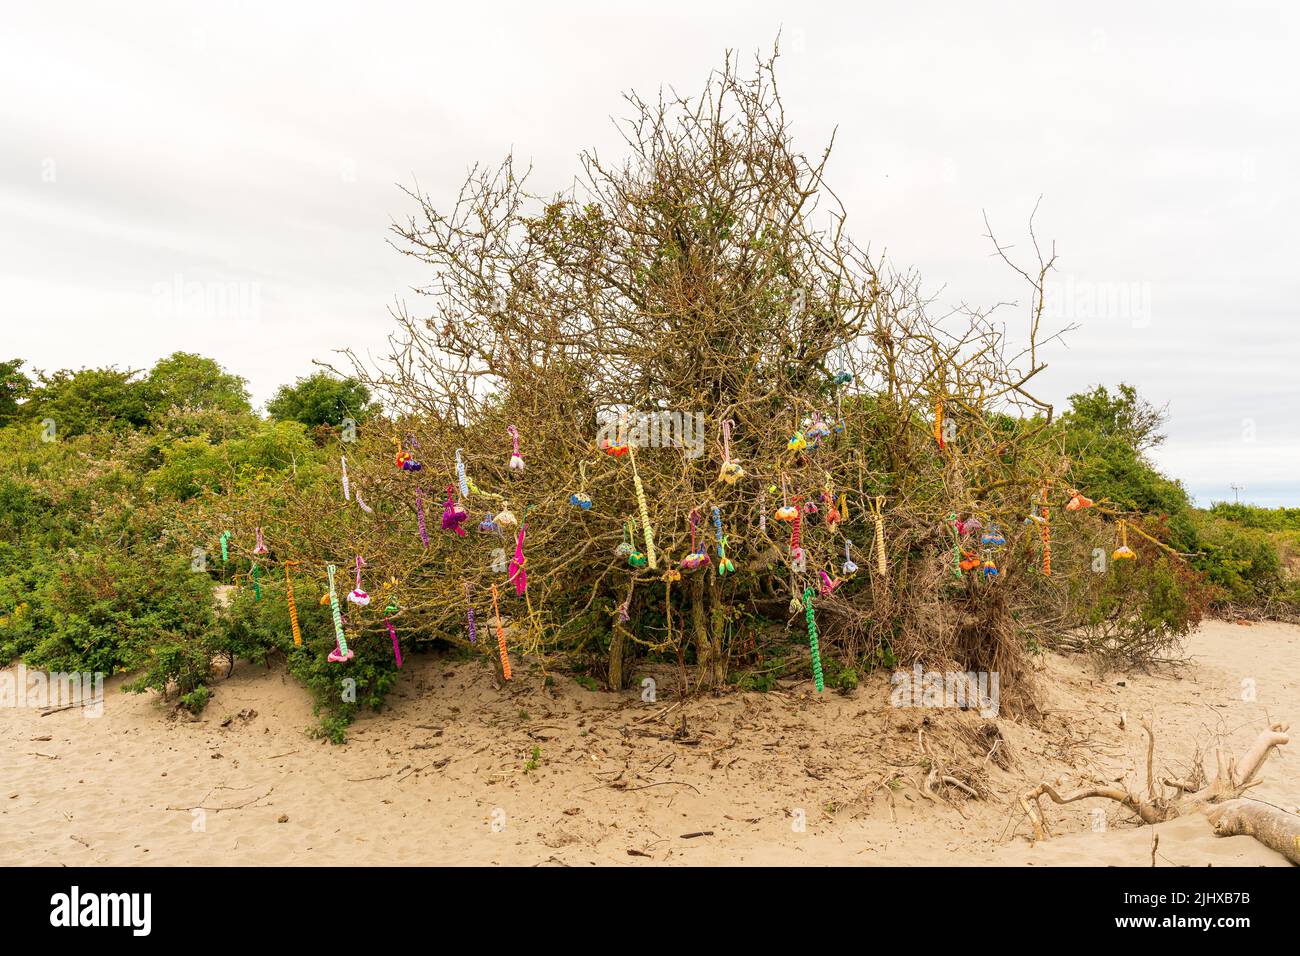 Art décoratif sur la plage créé par des artisans artisanaux et accroché dans des arbres naturels sur la plage Banque D'Images